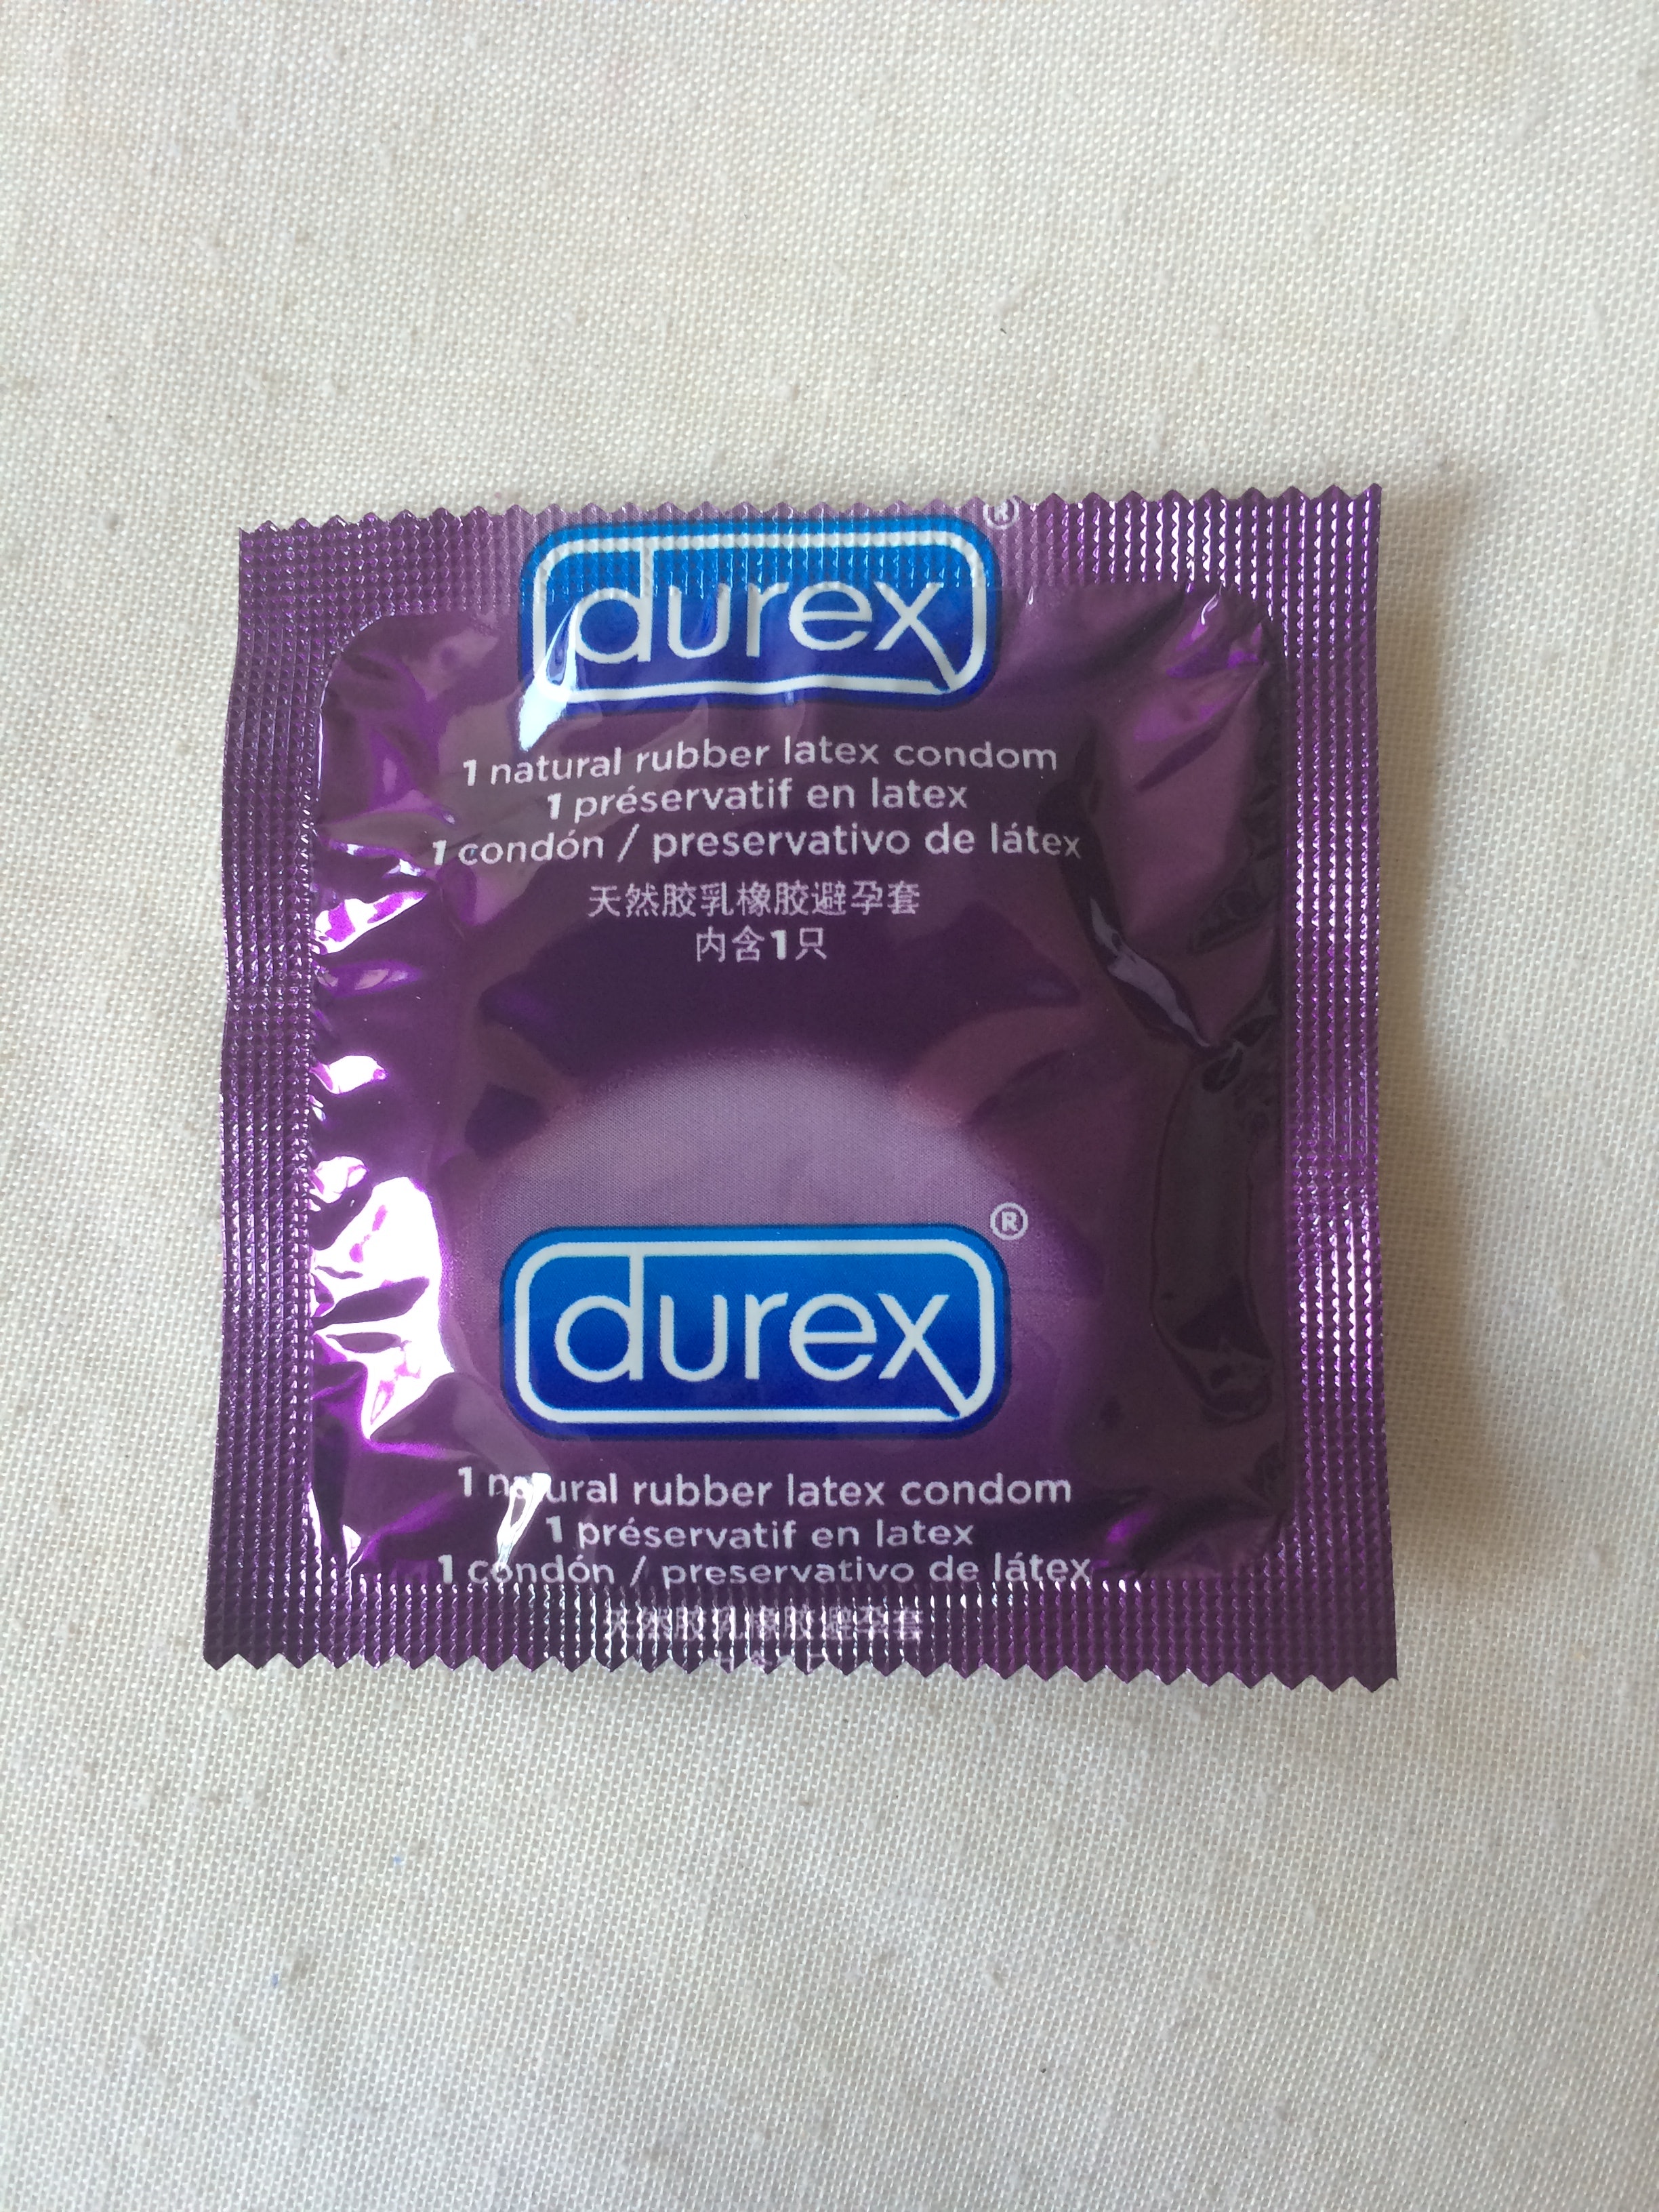 No orgasm with condom photo